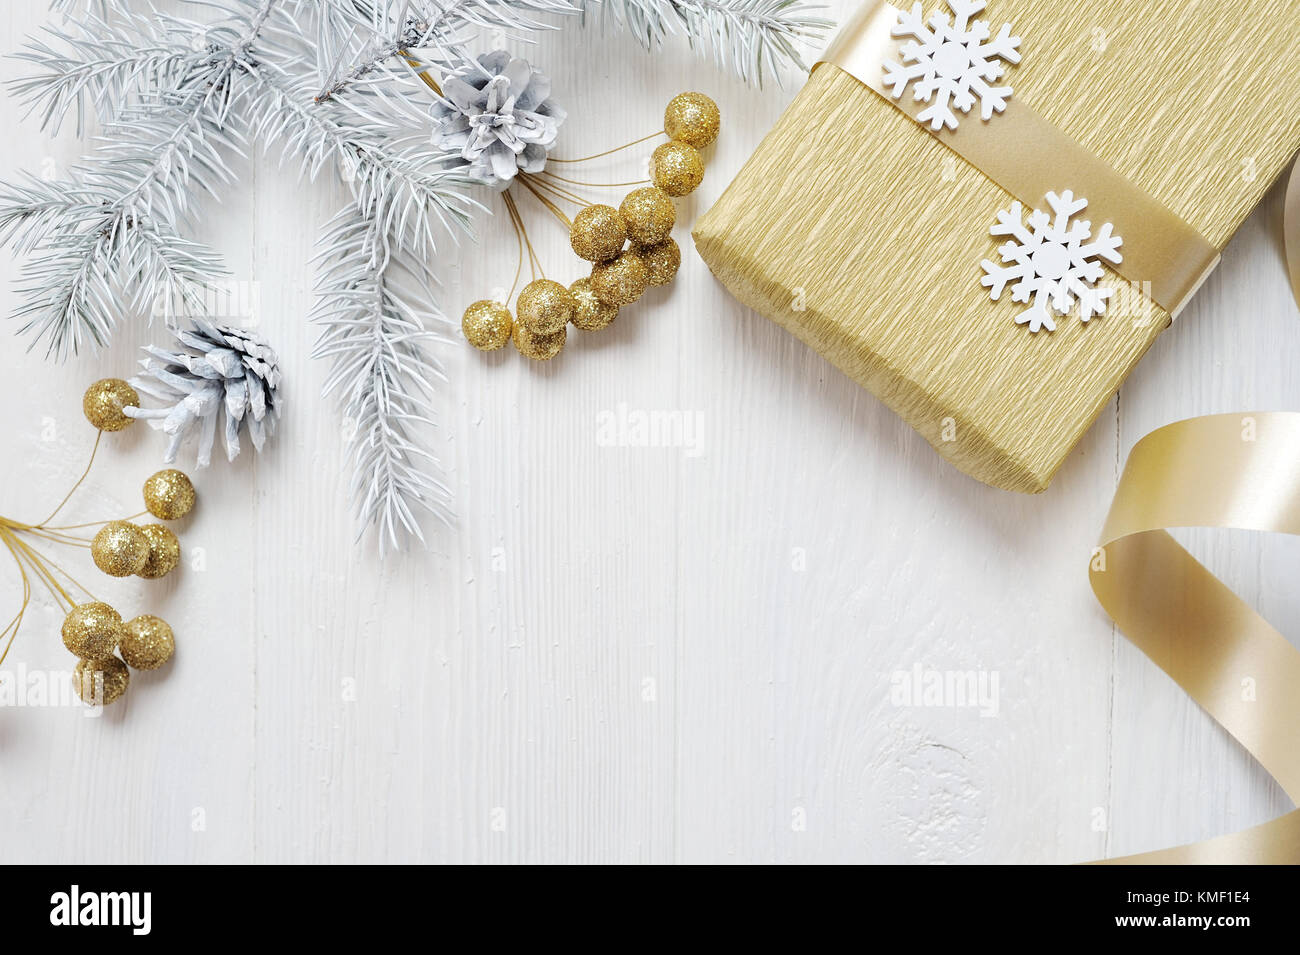 Mockup Weihnachten Geschenk Gold Bug und Baum Kegel, flatlay auf einem weißen Hintergrund, aus Holz mit Platz für Ihren Text Stockfoto